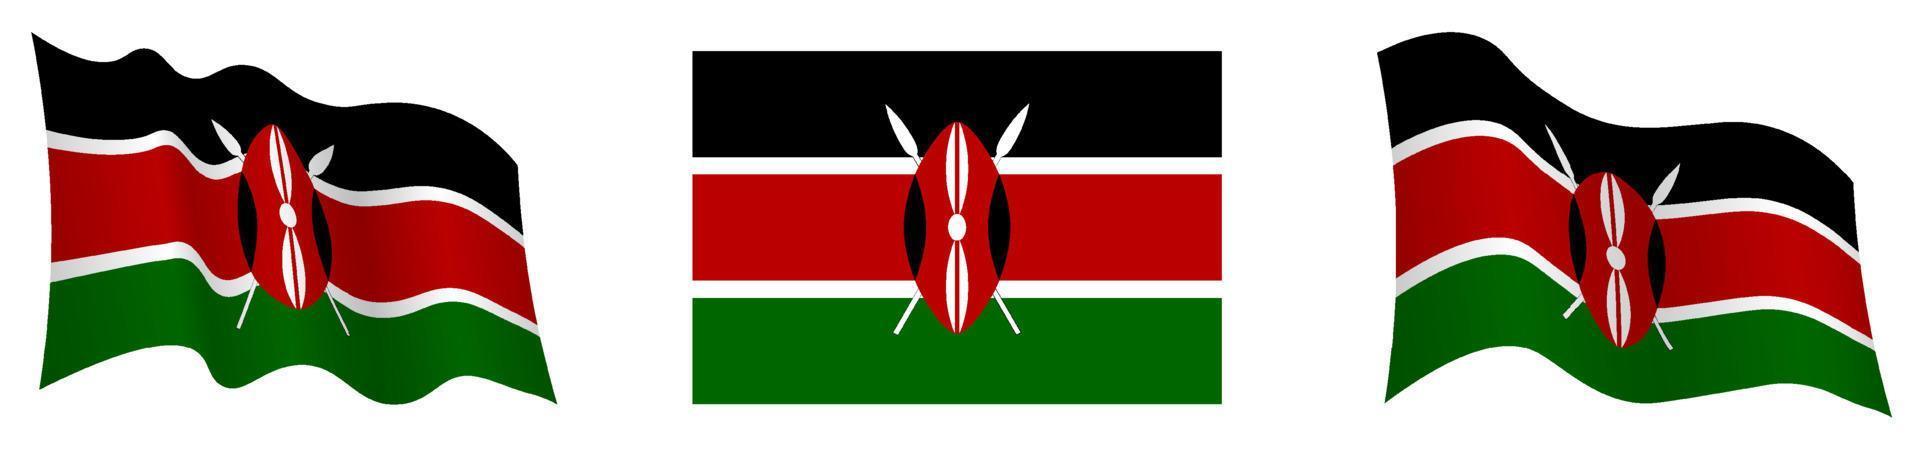 drapeau du kenya en position statique et en mouvement, flottant au vent dans des couleurs et des tailles exactes, sur fond blanc vecteur